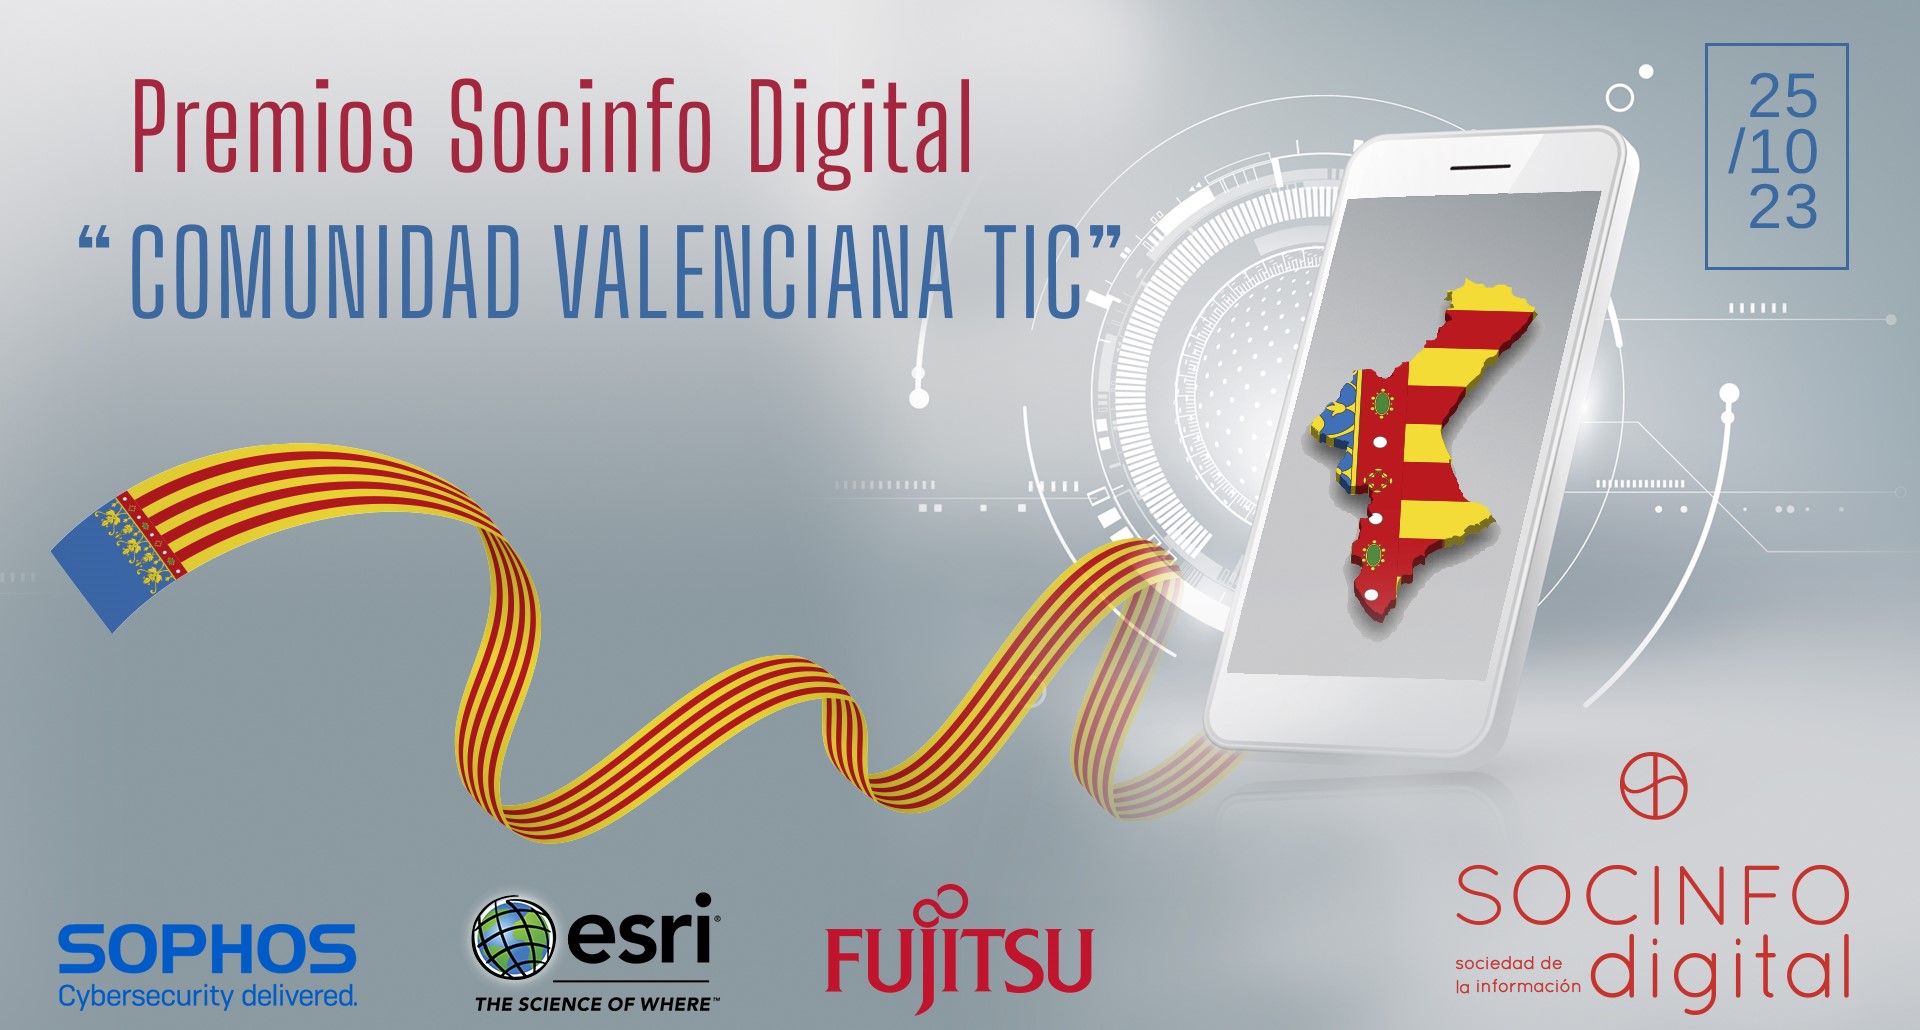 Candidaturas PREMIADAS Y Presentadas a los Premios Socinfo Digital “COMUNIDAD VALENCIANA TIC”